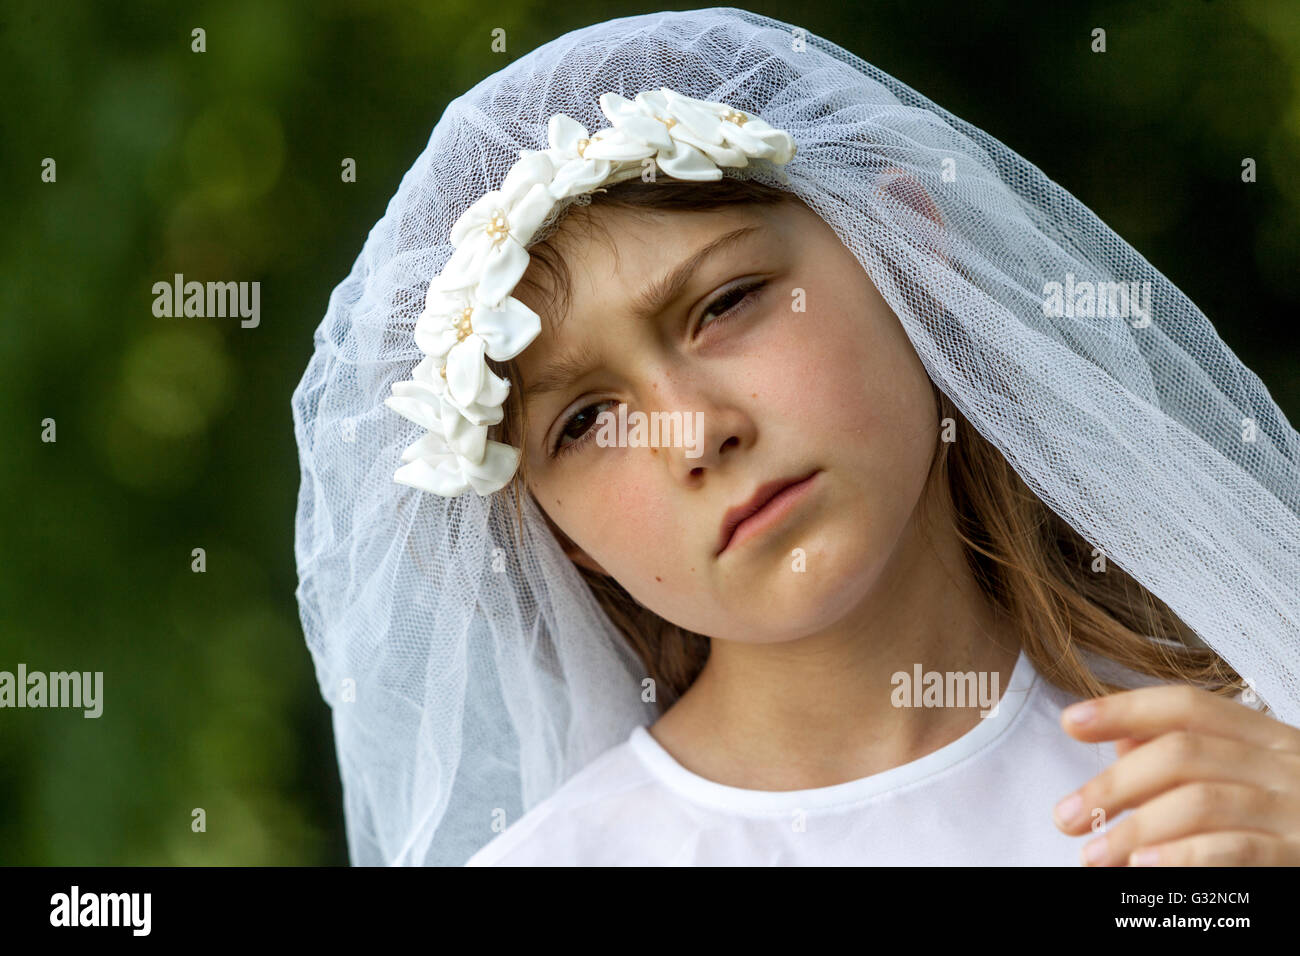 Età dell'innocenza 6-7 anni Old Girl White Bridal Veil Bride Game Child Face Sad Expression Sad Girl Outside Foto Stock